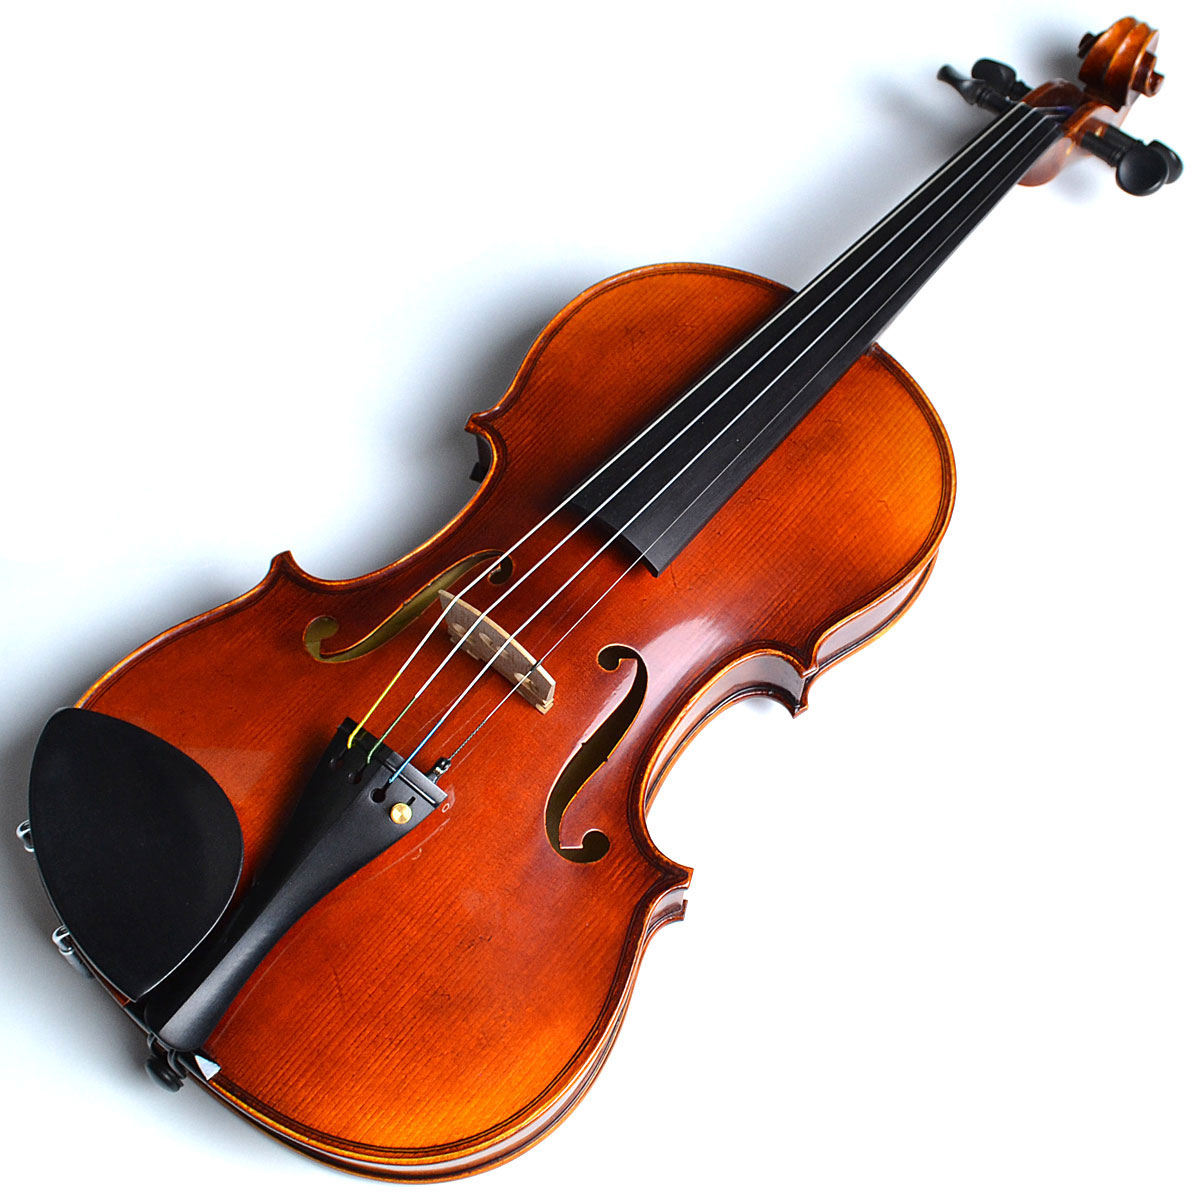 CONTENTSGEWA Meister II バイオリン セット 4/4サイズ ケースカラー：ブラックマイスター II アウトフィットこの商品について技術者による安心のアフターフォロー最新情報を手に入れよう音楽をもっと楽しみたい方は音楽教室がおススメ♪お問い合わせこちらGEWA Meister I […]